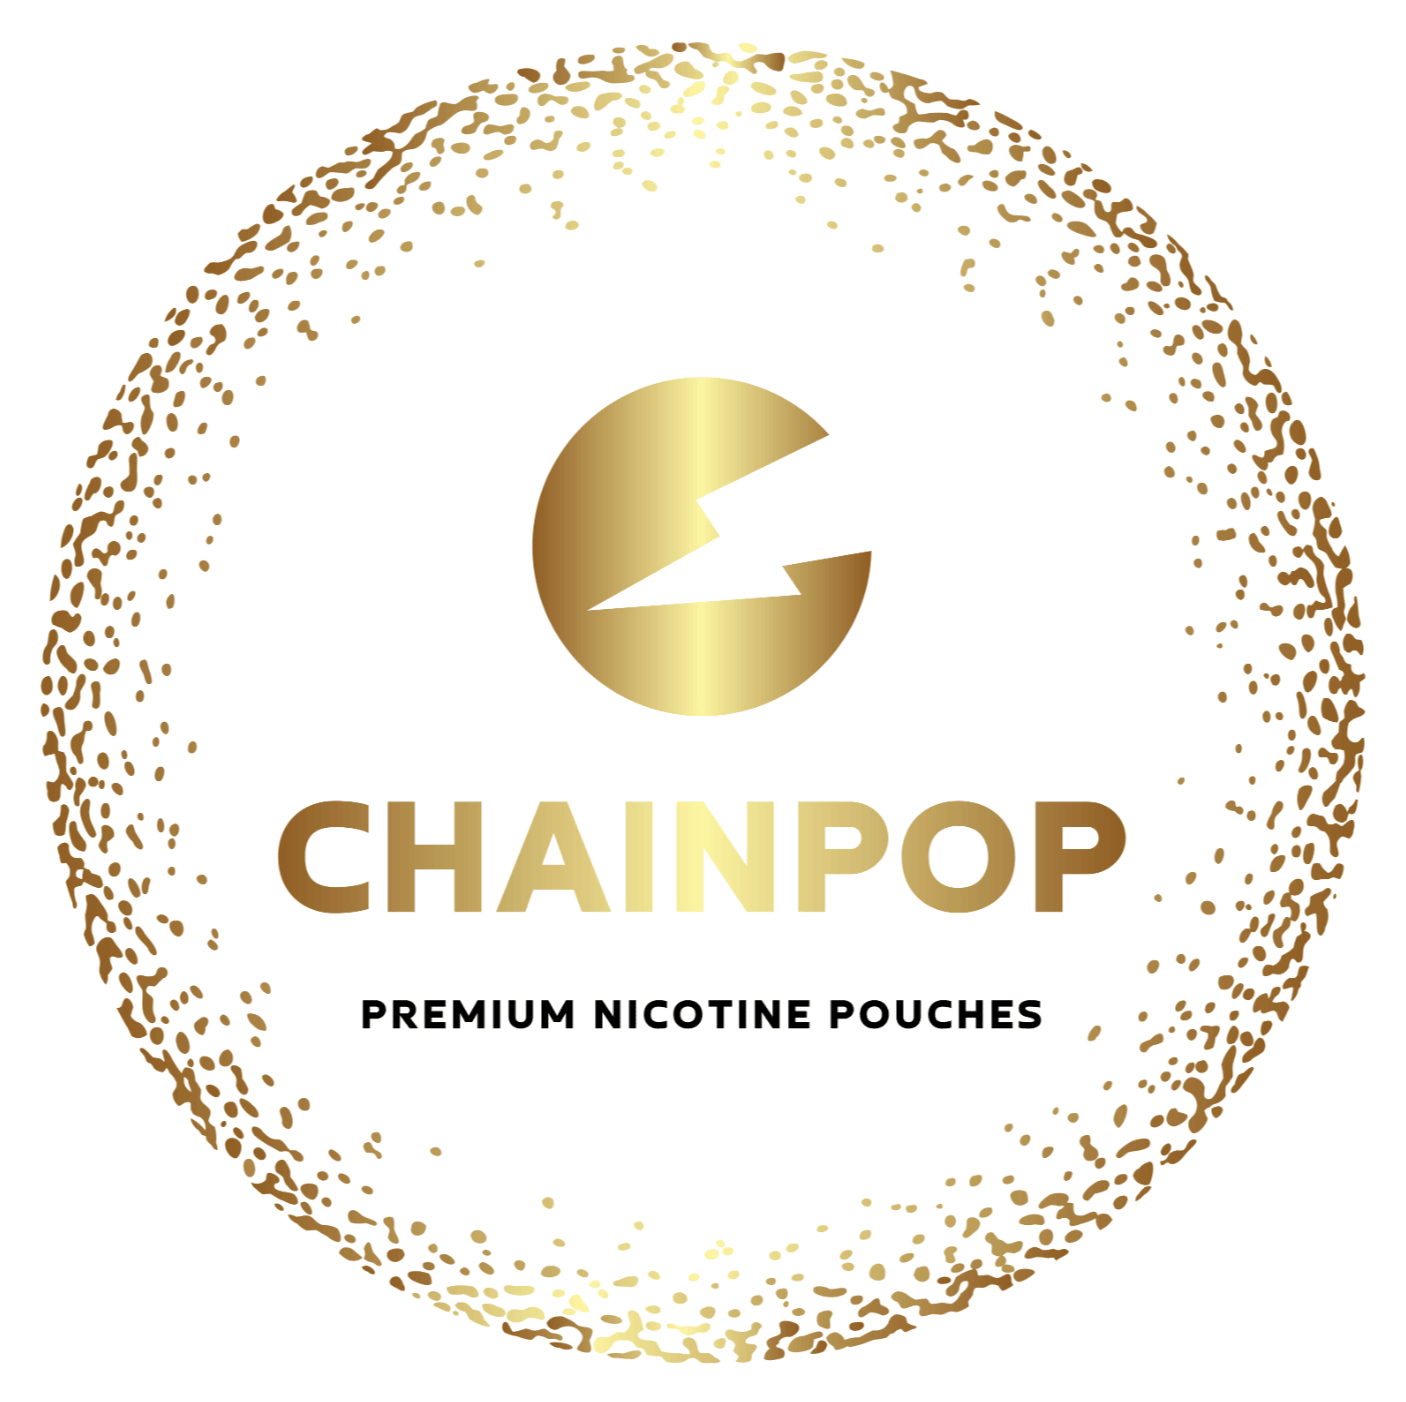 Woreczki z nikotyną Chainpop logo